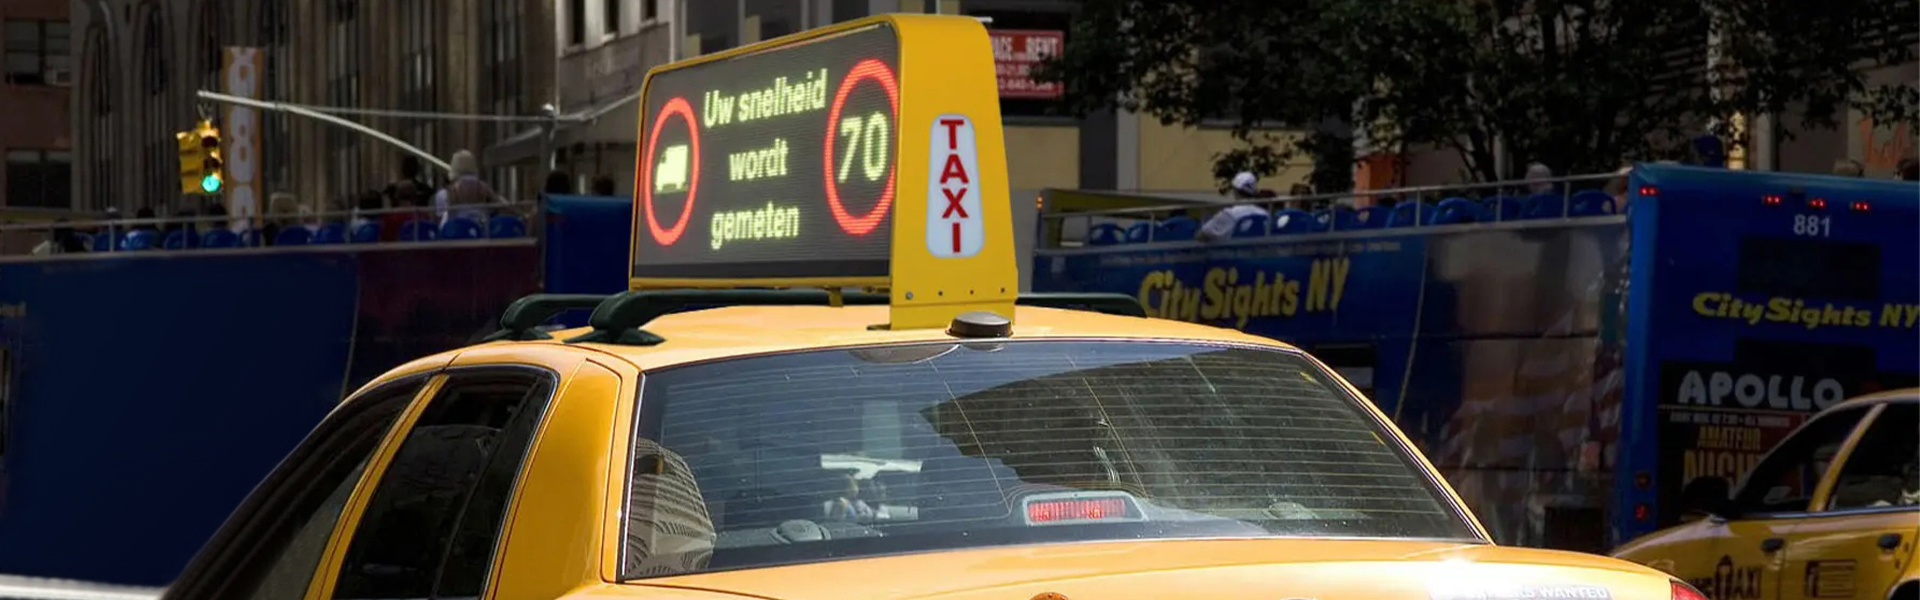 aplikace taxi top LED obrazovky